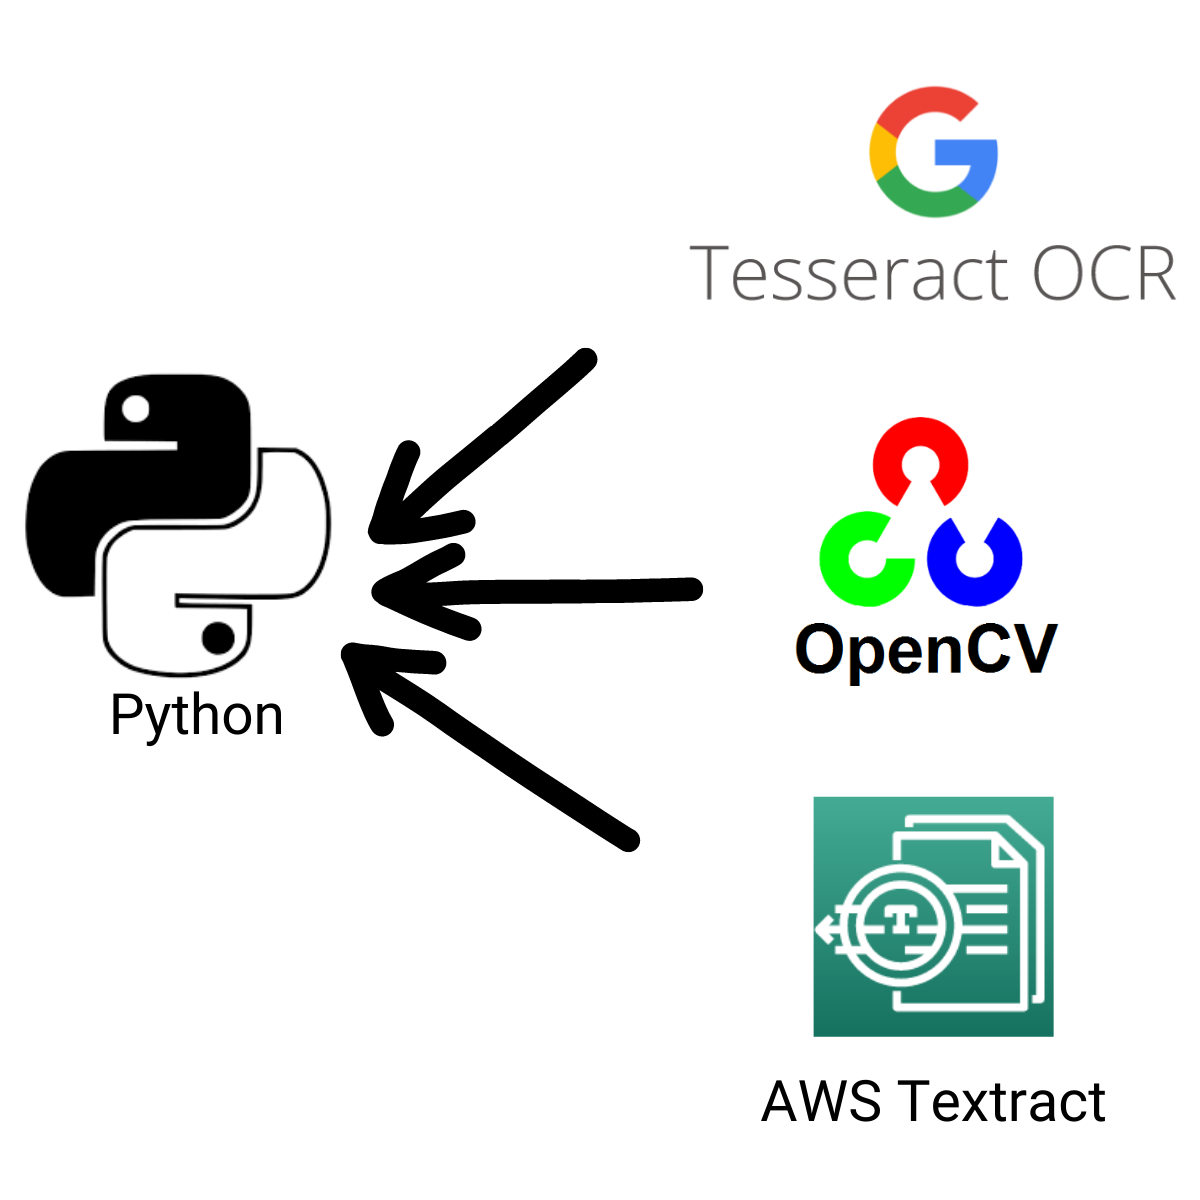 Tesseract python. Tesseract OCR. OPENCV Python логотип. Tesseract OCR logo.